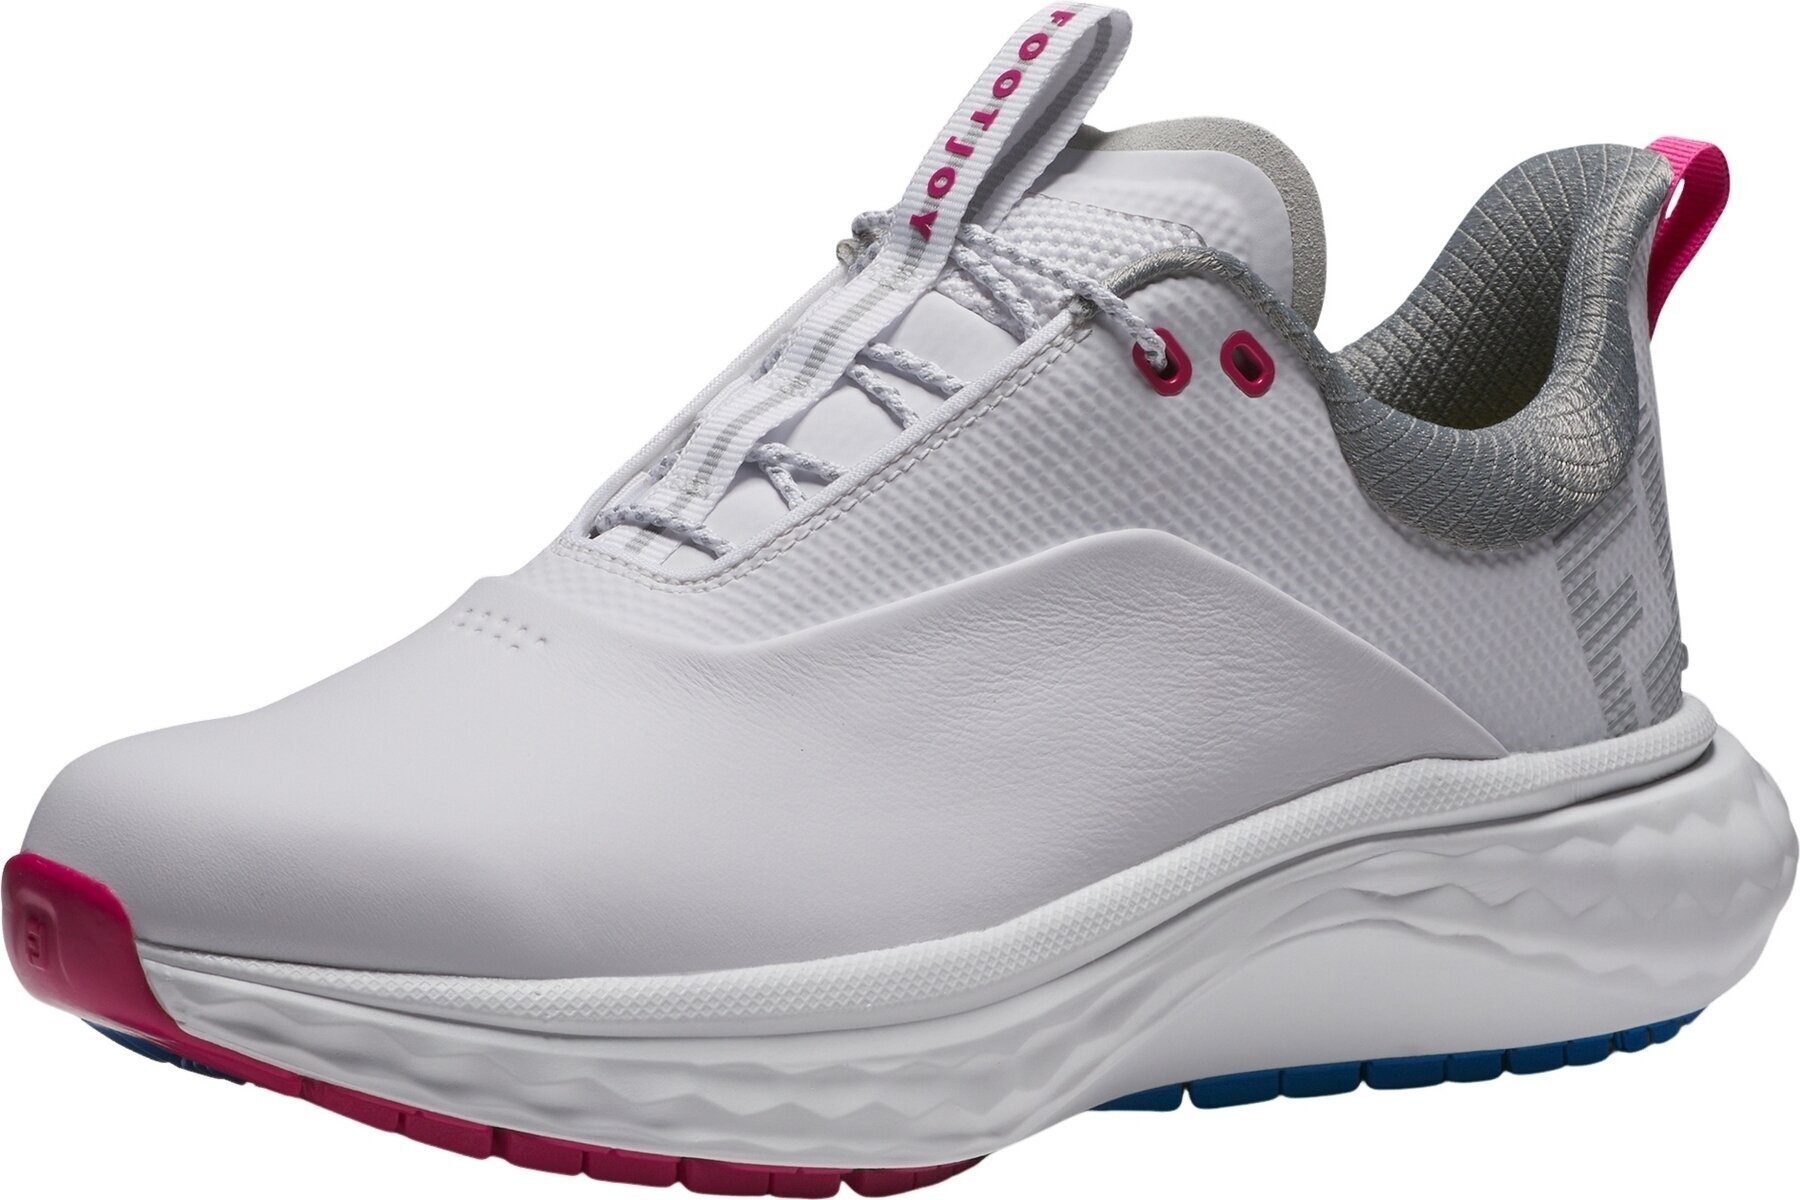 Calçado de golfe para mulher Footjoy Quantum Womens Golf Shoes White/Blue/Pink 40